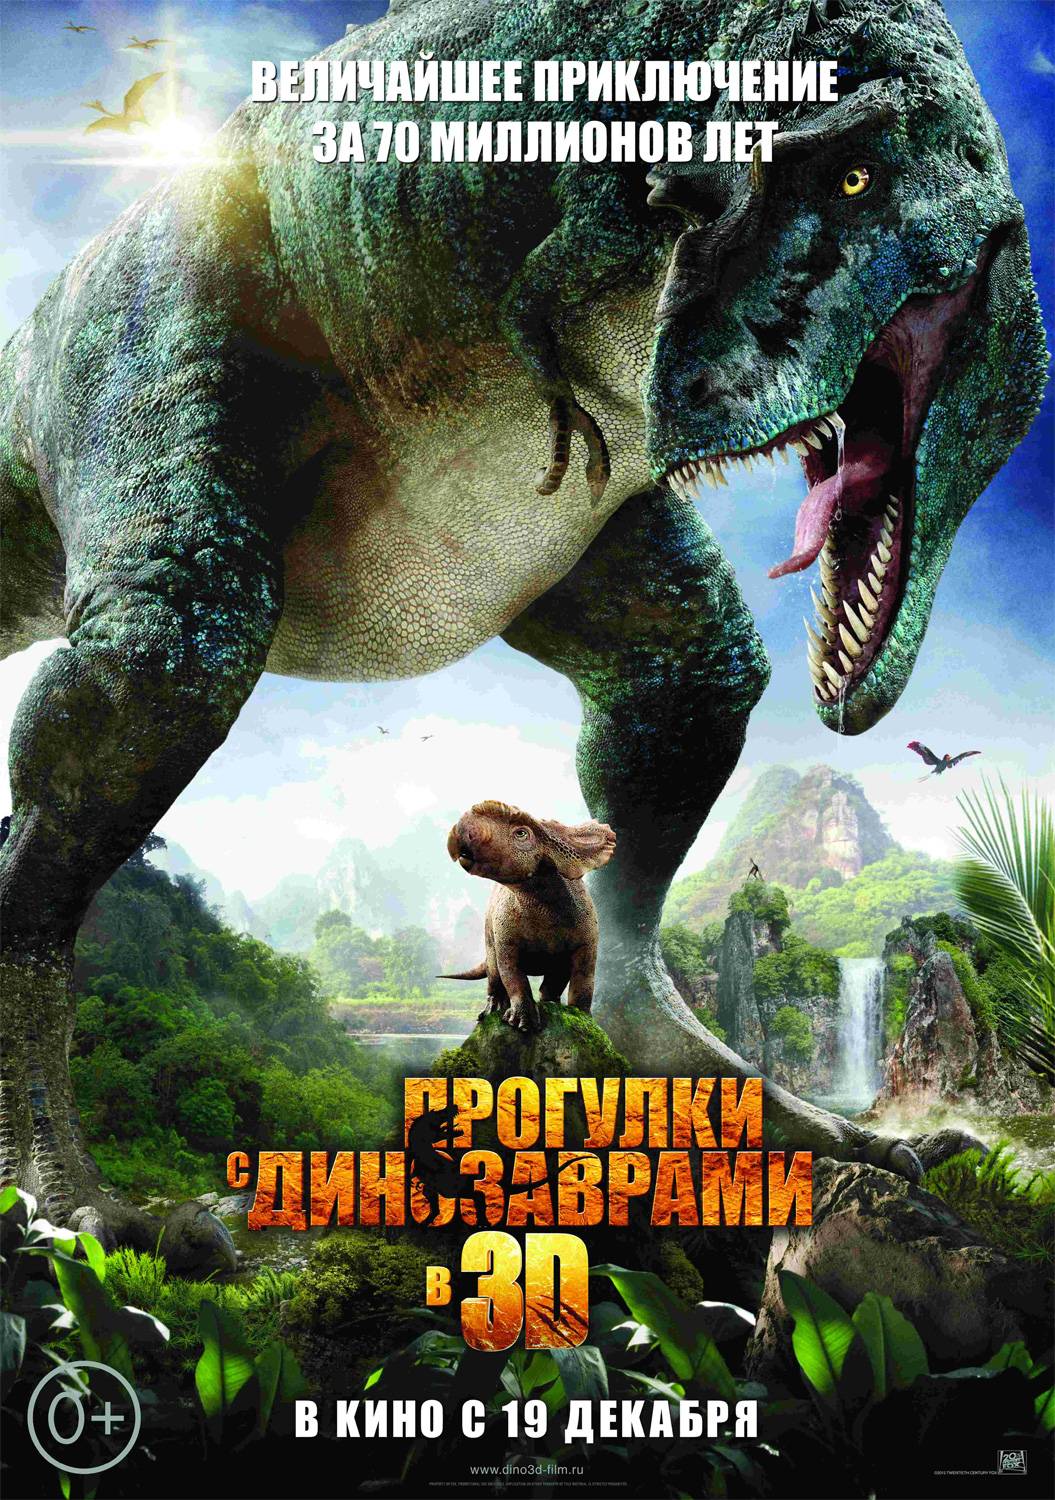 Прогулка с динозаврами 3D / Walking with Dinosaurs 3D (2013) отзывы. Рецензии. Новости кино. Актеры фильма Прогулка с динозаврами 3D. Отзывы о фильме Прогулка с динозаврами 3D